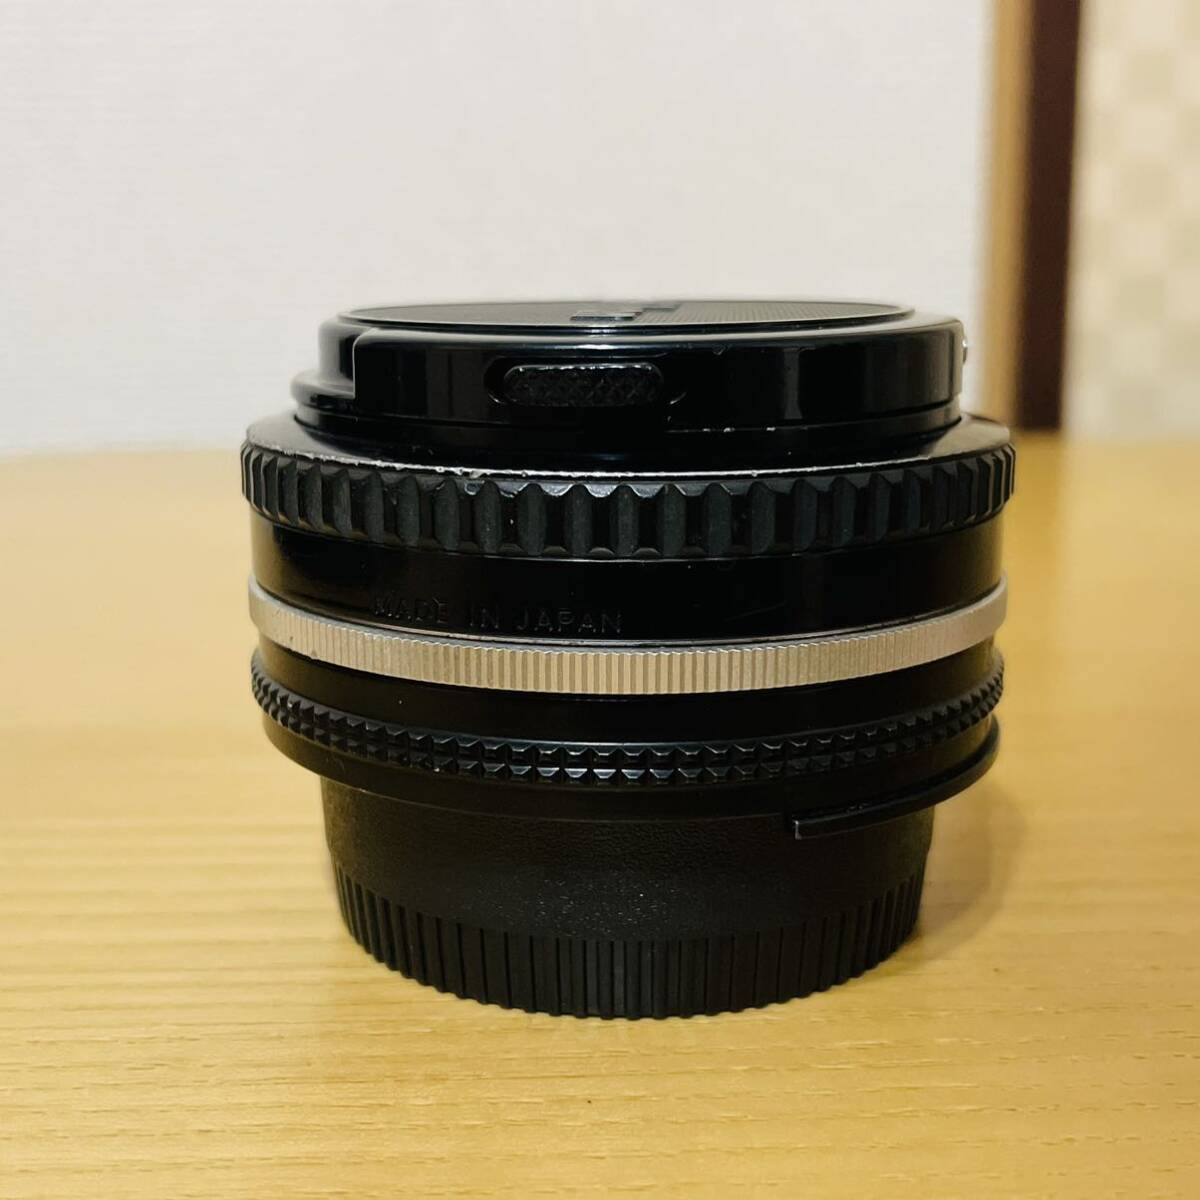 ニコン Nikon Ai-s AIS 50mm F1.8 パンケーキレンズ 単焦点 Fマウント Ai-S レンズ の画像4